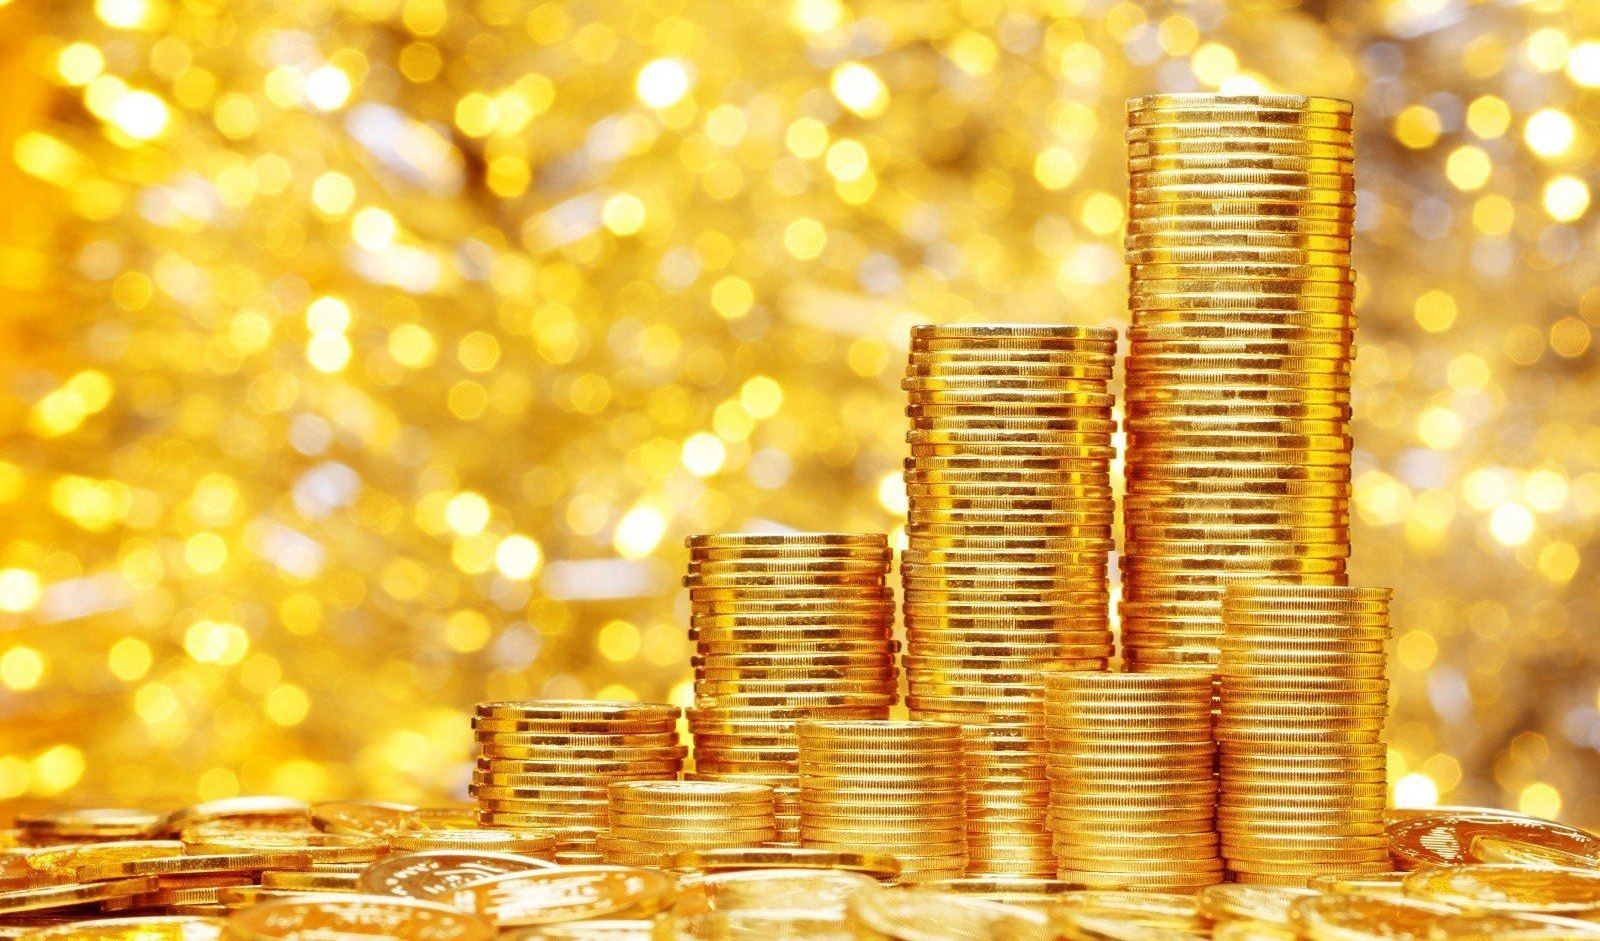 نوسان قیمت انوع سکه در روز رشد بهای جهانی طلا